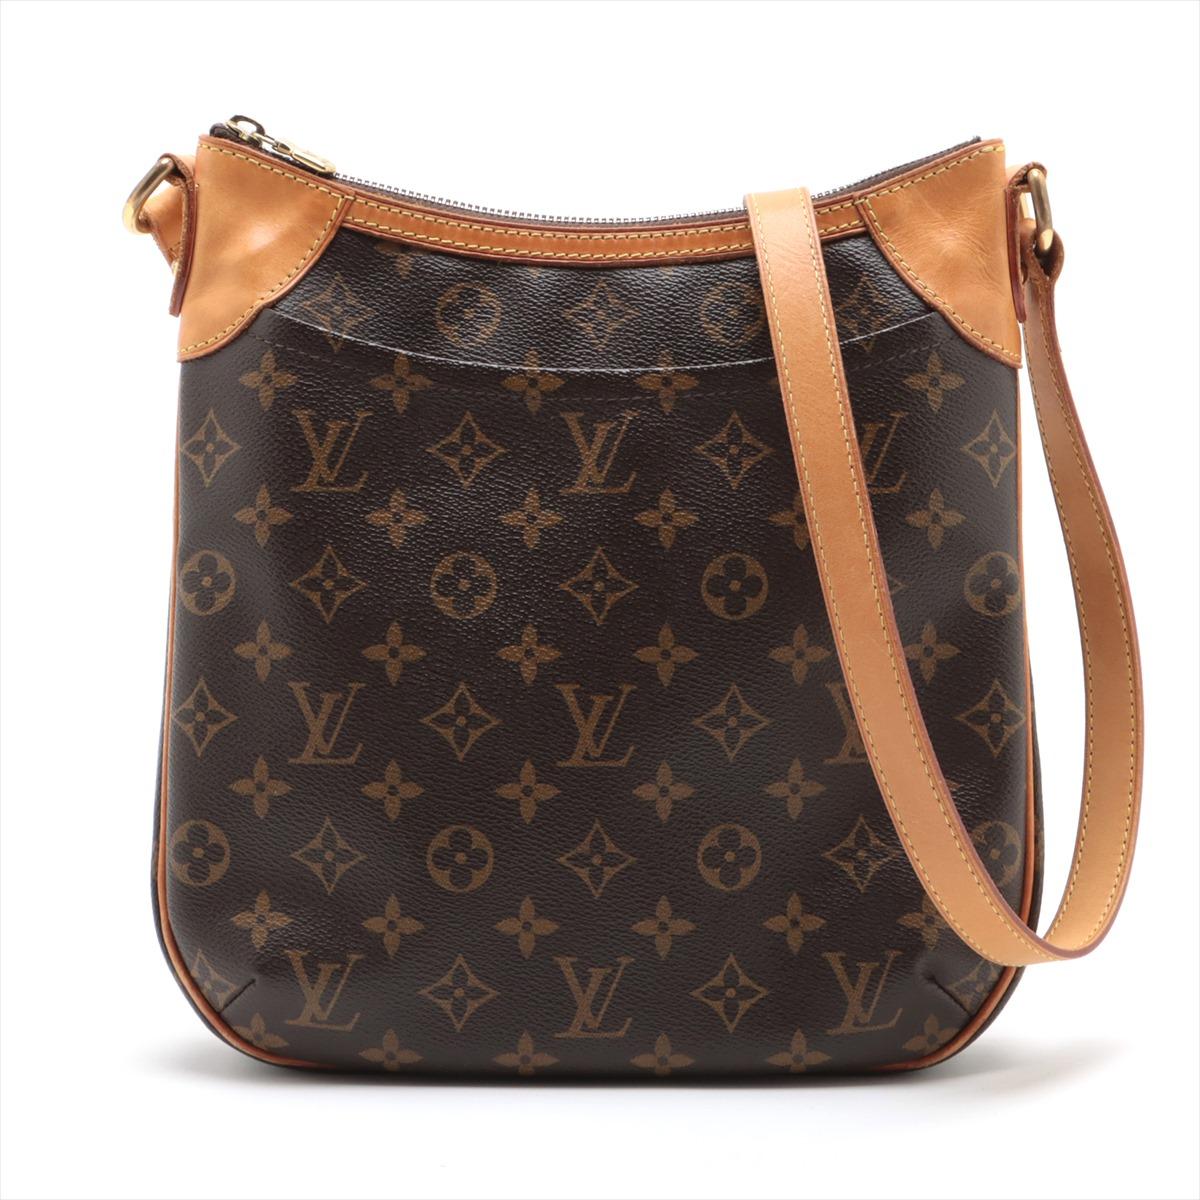 Le Monogram Eleg PM de Louis Vuitton est un sac à bandoulière classique et sophistiqué qui respire l'élégance intemporelle. Confectionné dans la toile monogramme emblématique de la marque, le sac arbore le célèbre motif monogramme LV, ce qui le rend